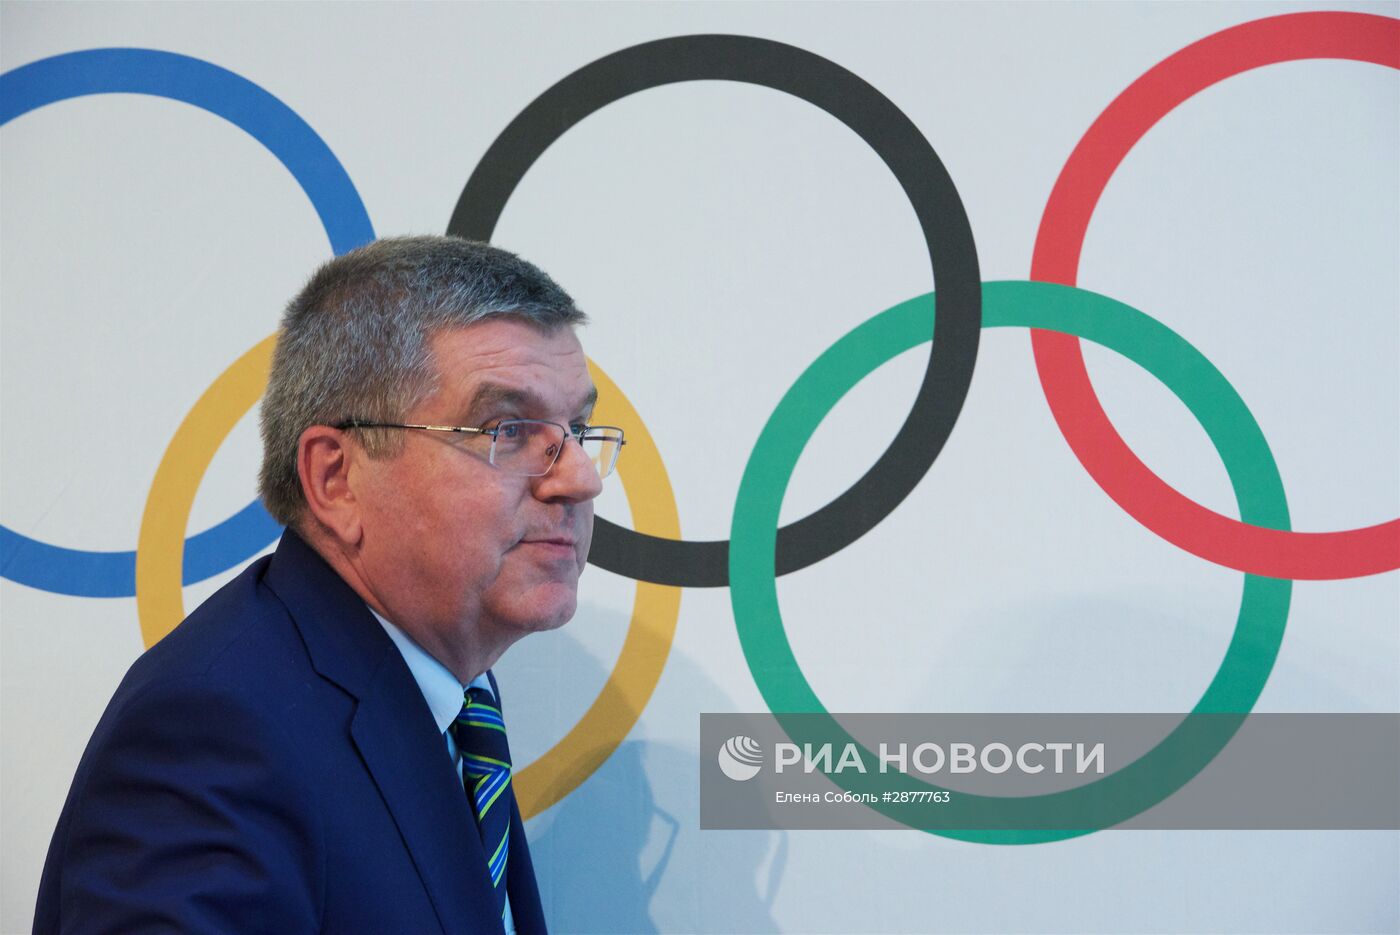 МОК решил не отстранять всю сборную России от Олимпиады в Рио